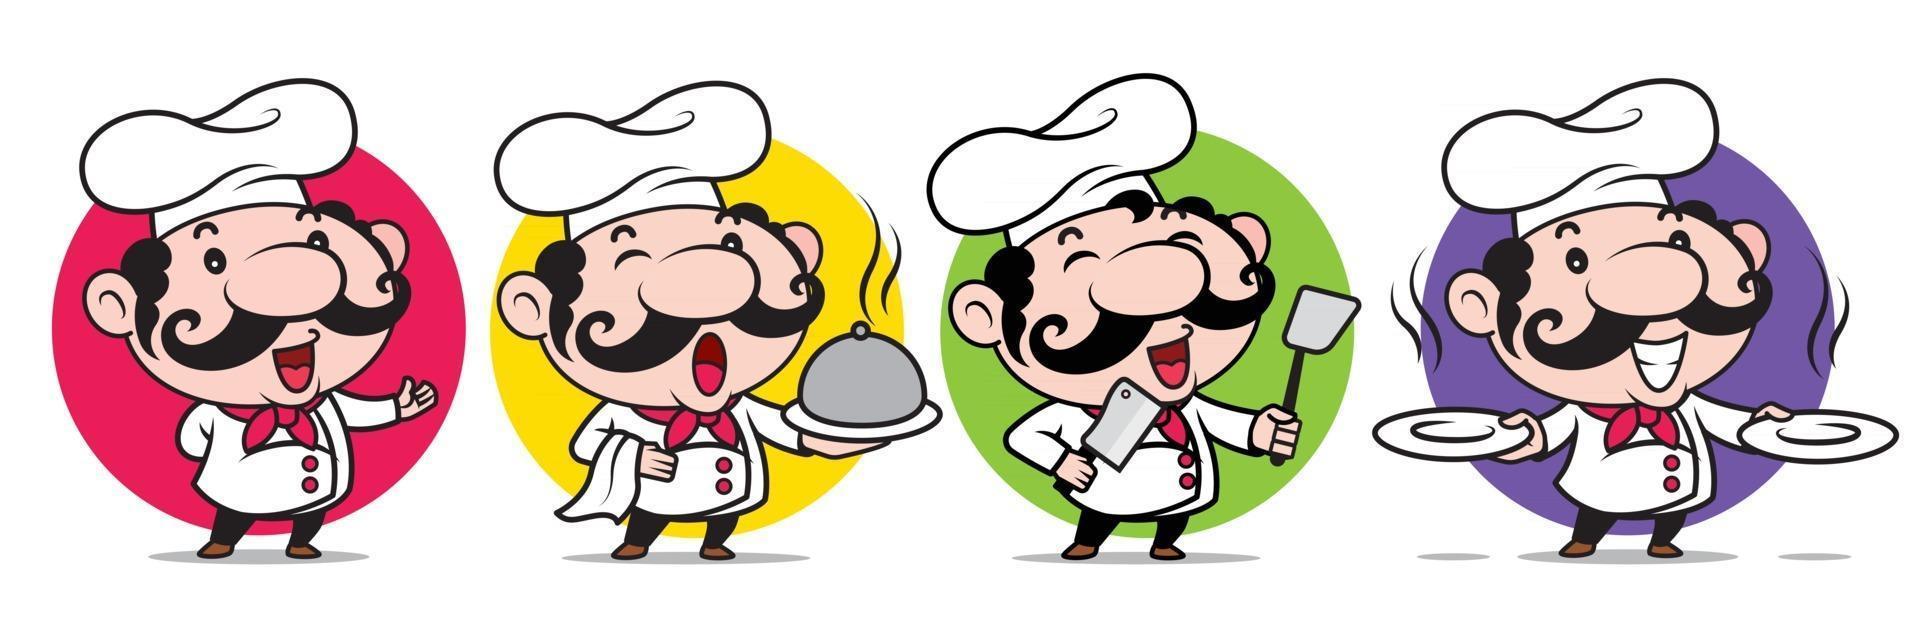 le italiensk kock med stora mustascher som håller köksvaror vektor